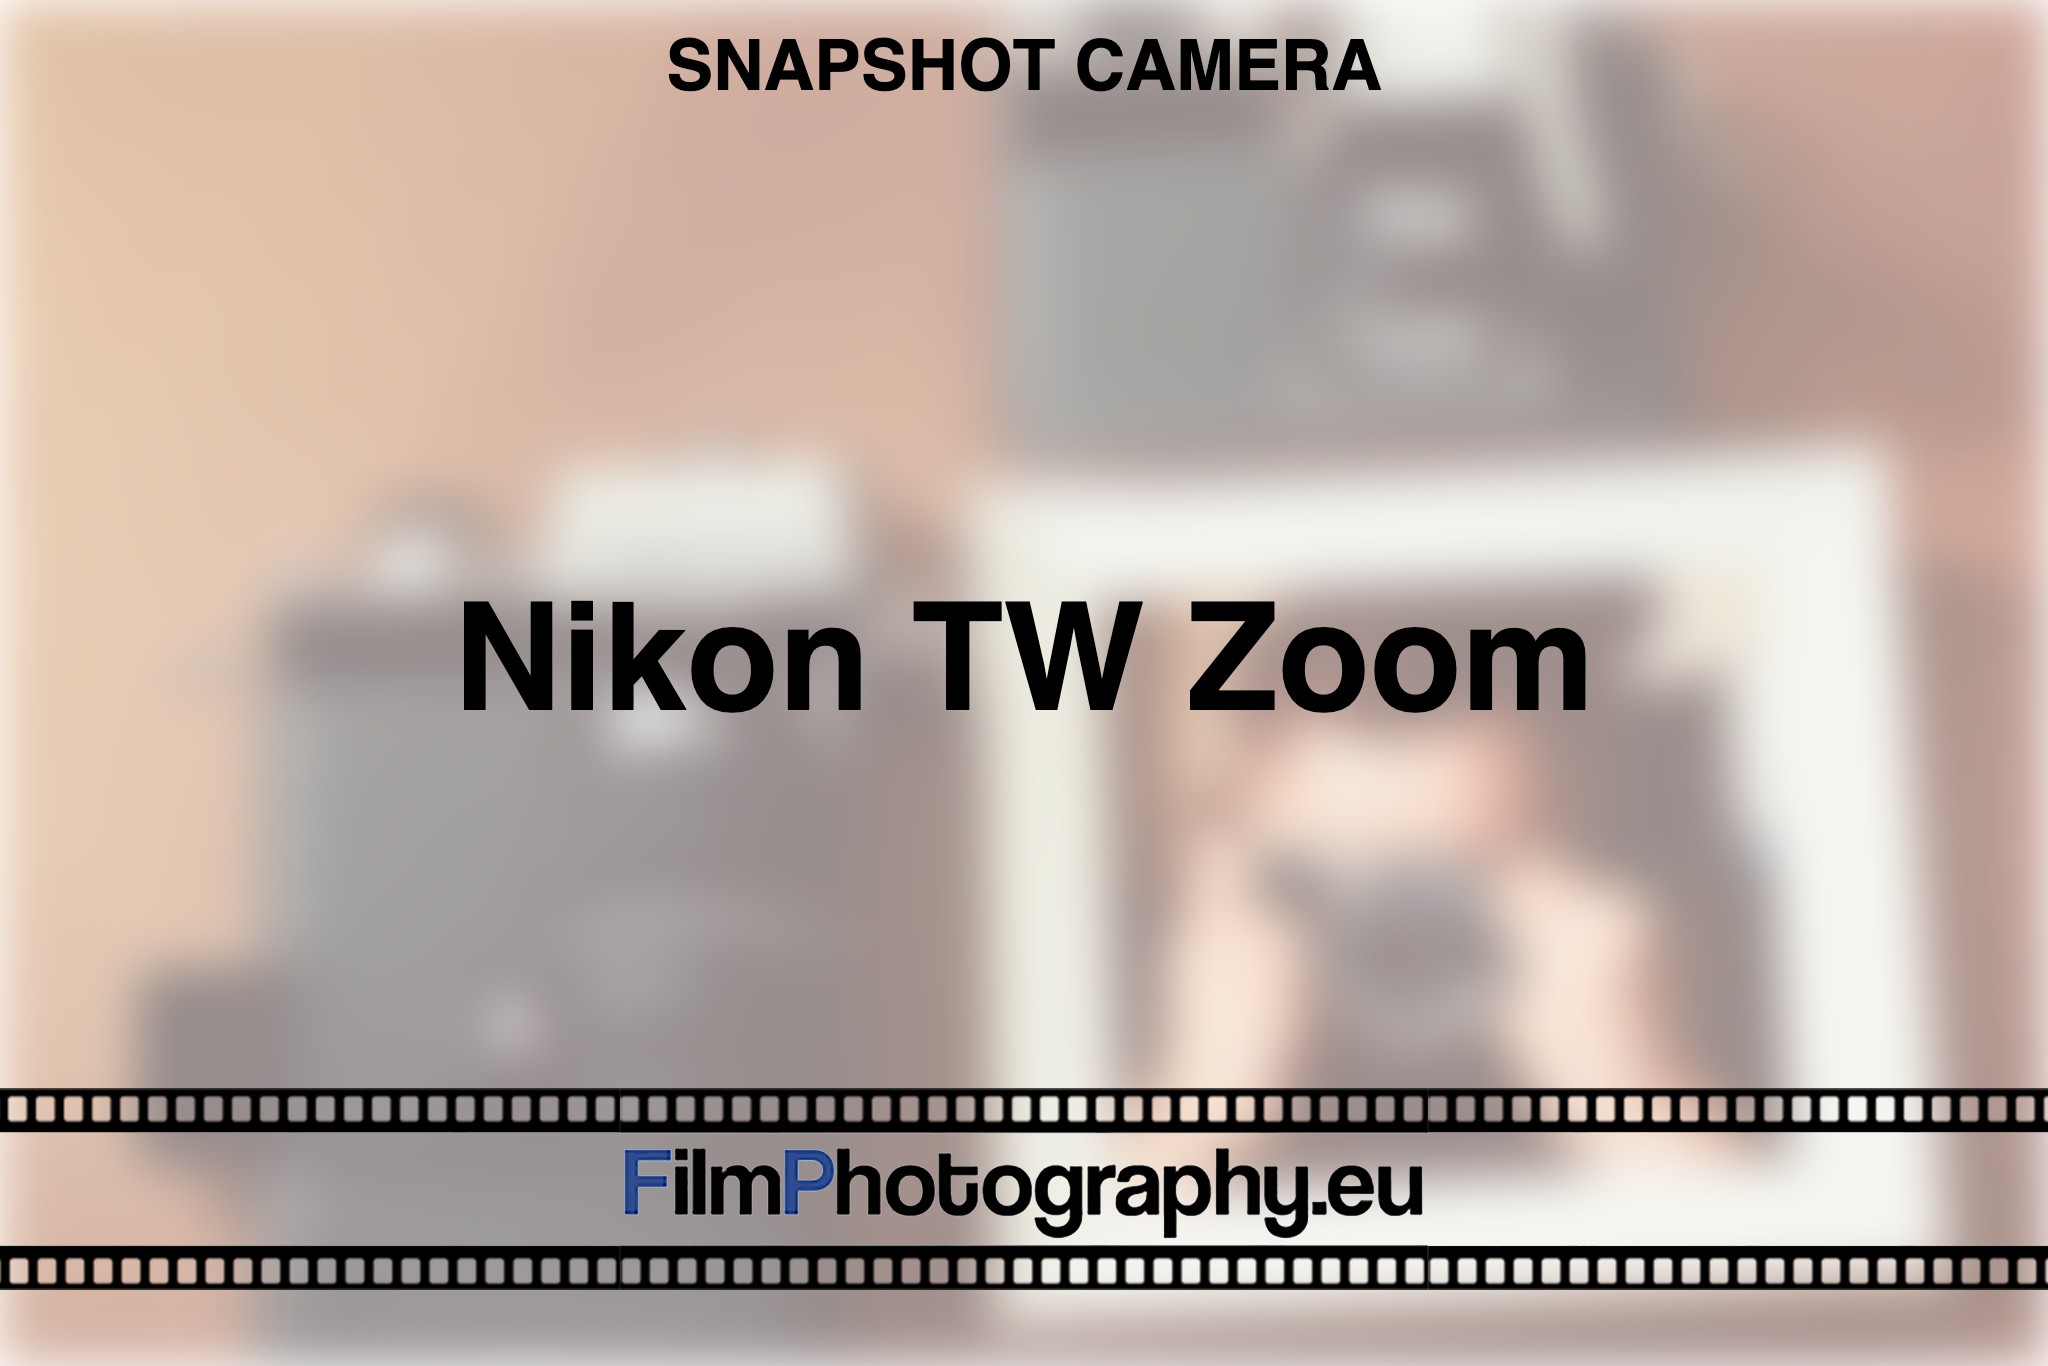 nikon-tw-zoom-snapshot-camera-bnv